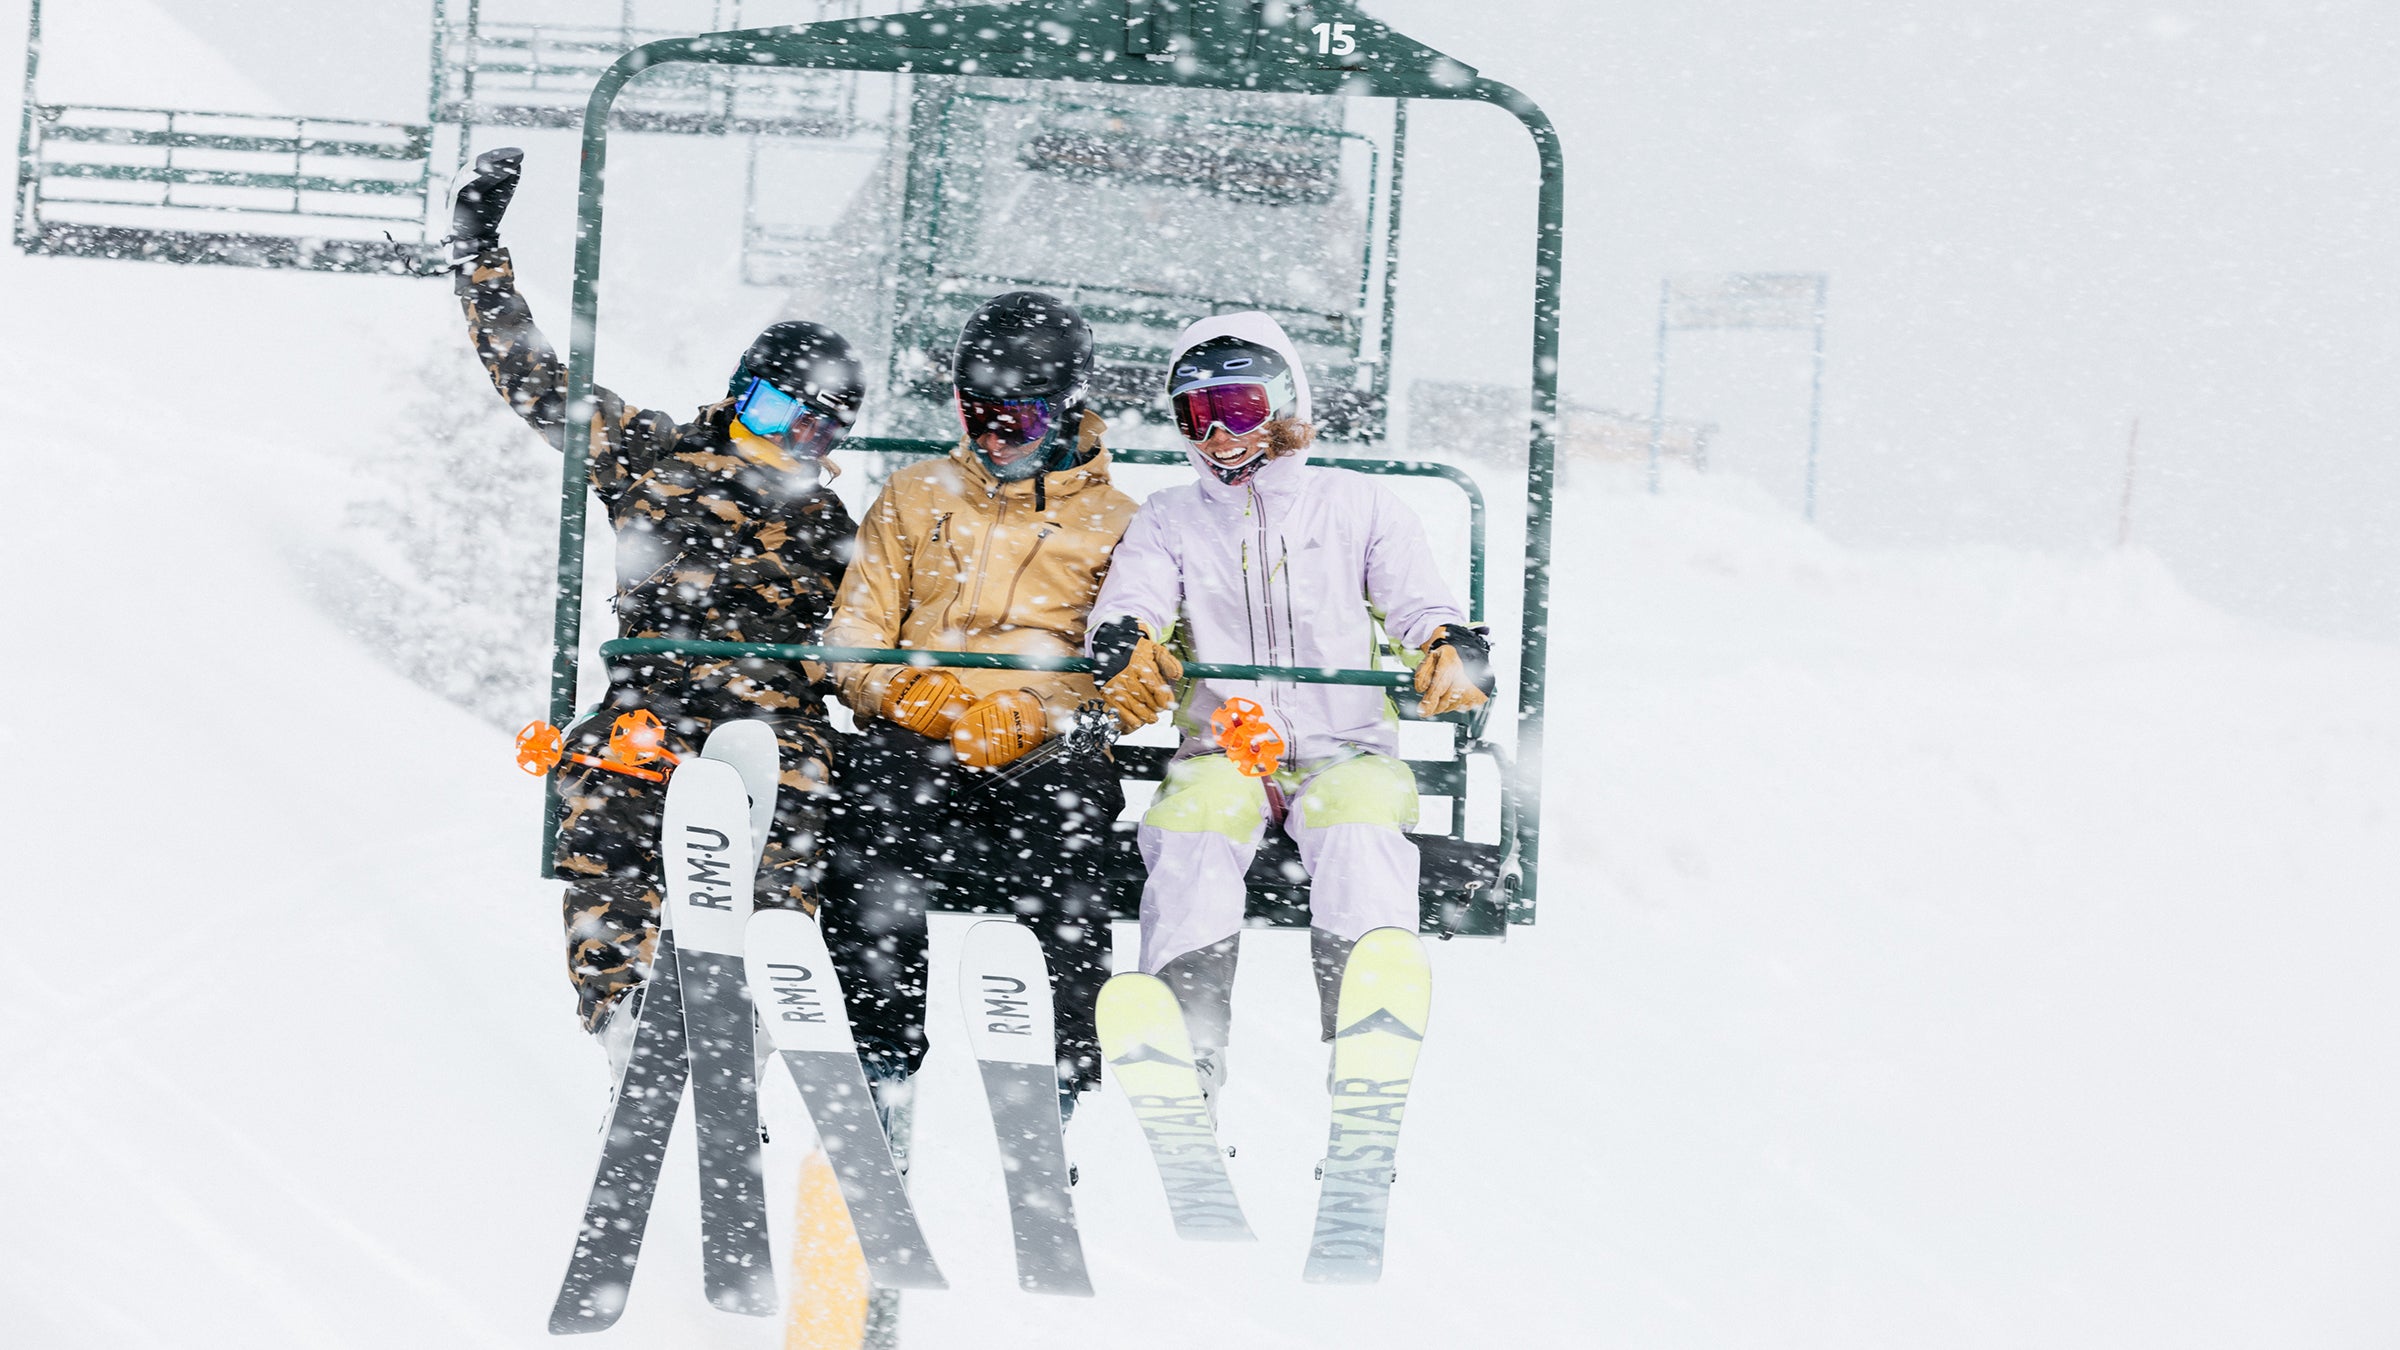 BUY SNOWY OWL Windstopper Ski Pants - Women's ON SALE NOW! - Cheap Snow Gear